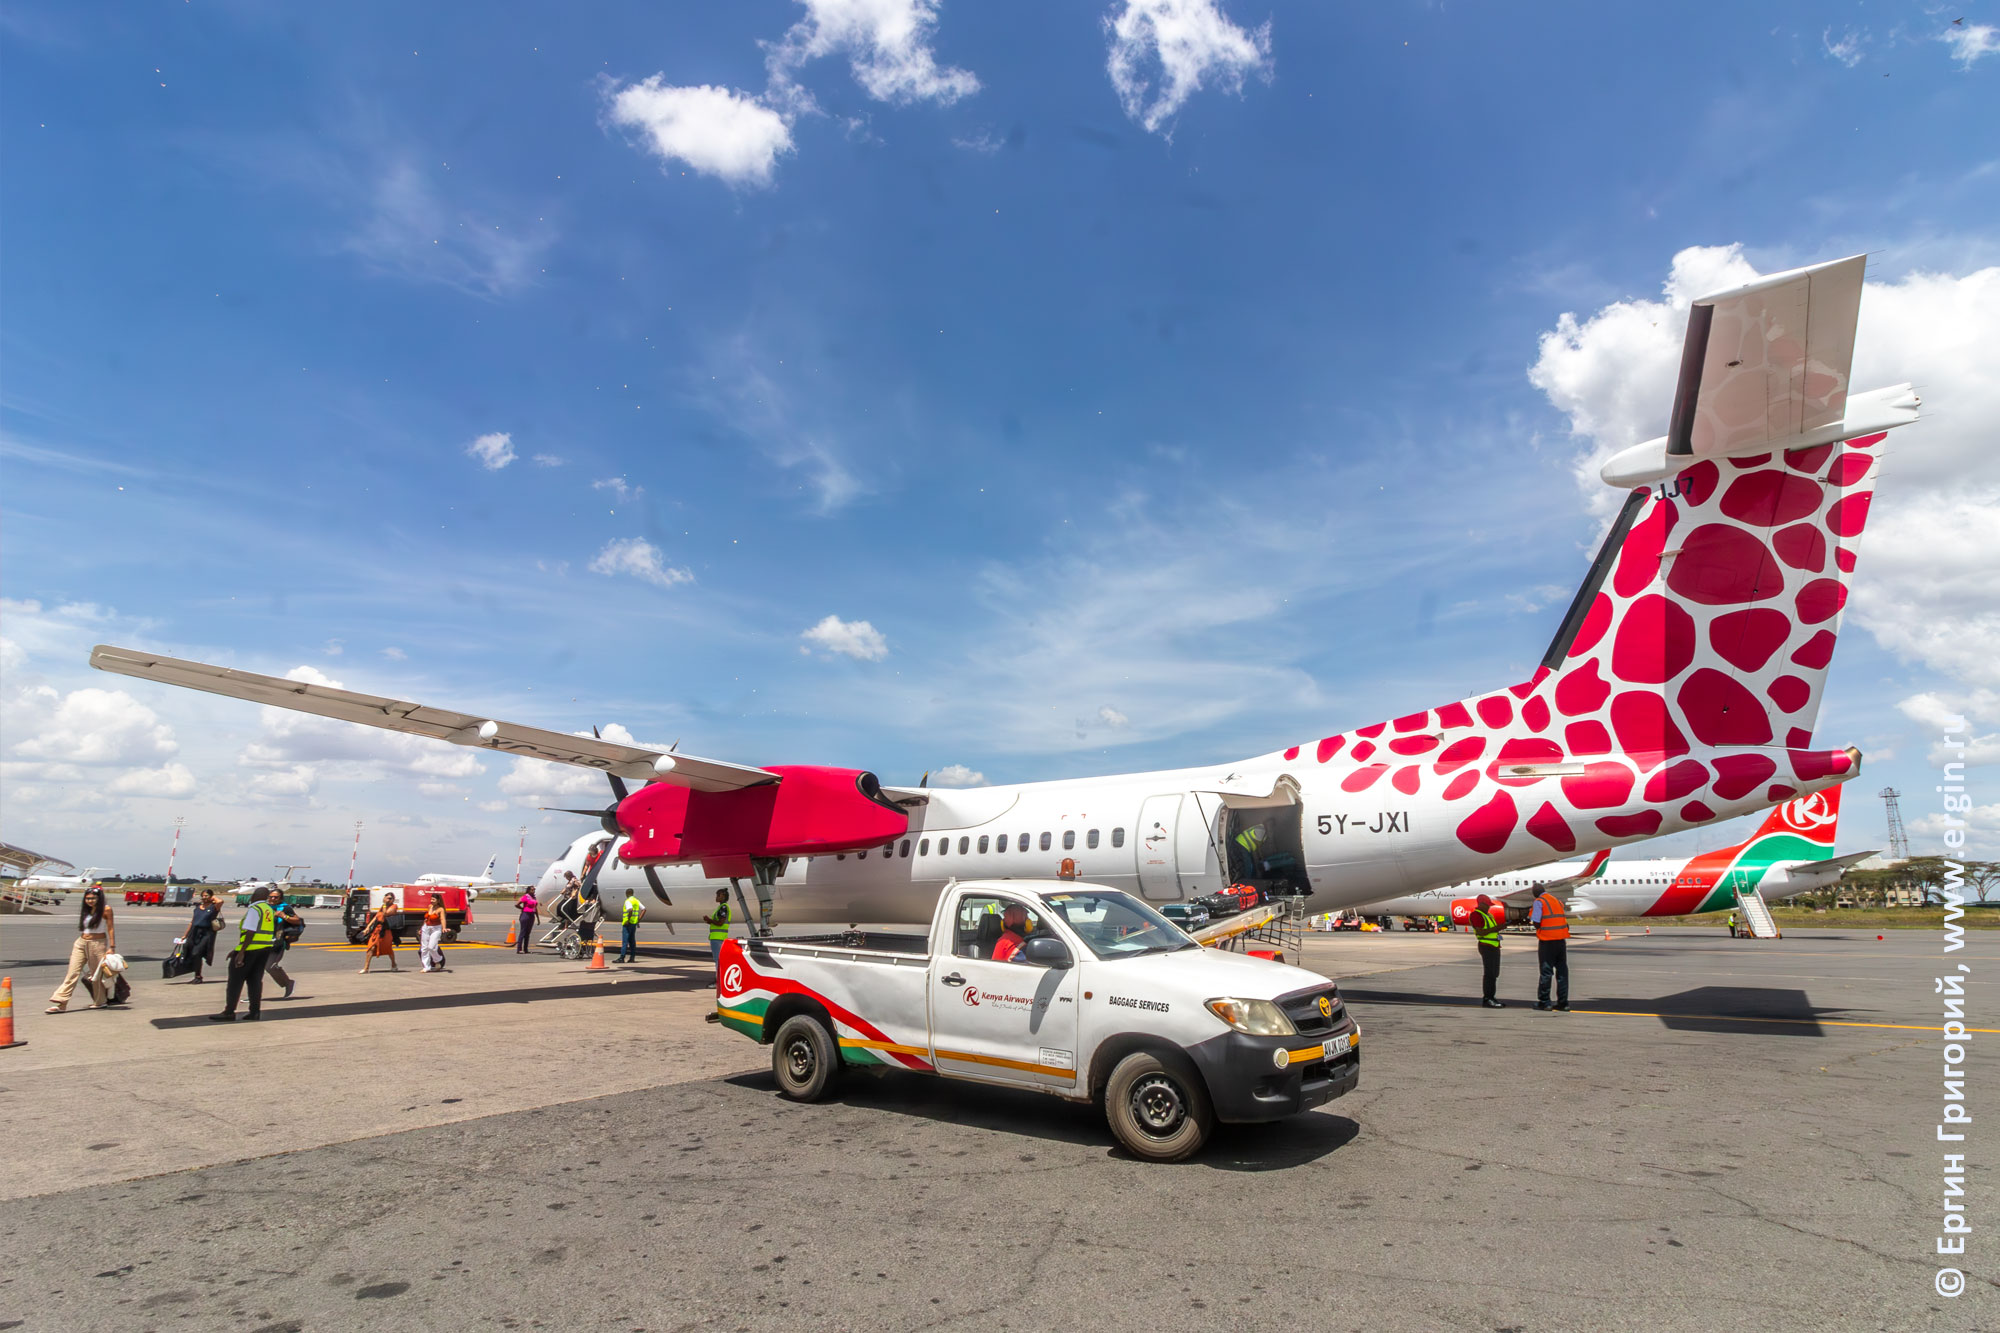 Раскраска фюзеляжа самолета Диани-Найроби местных авиалиний Кении